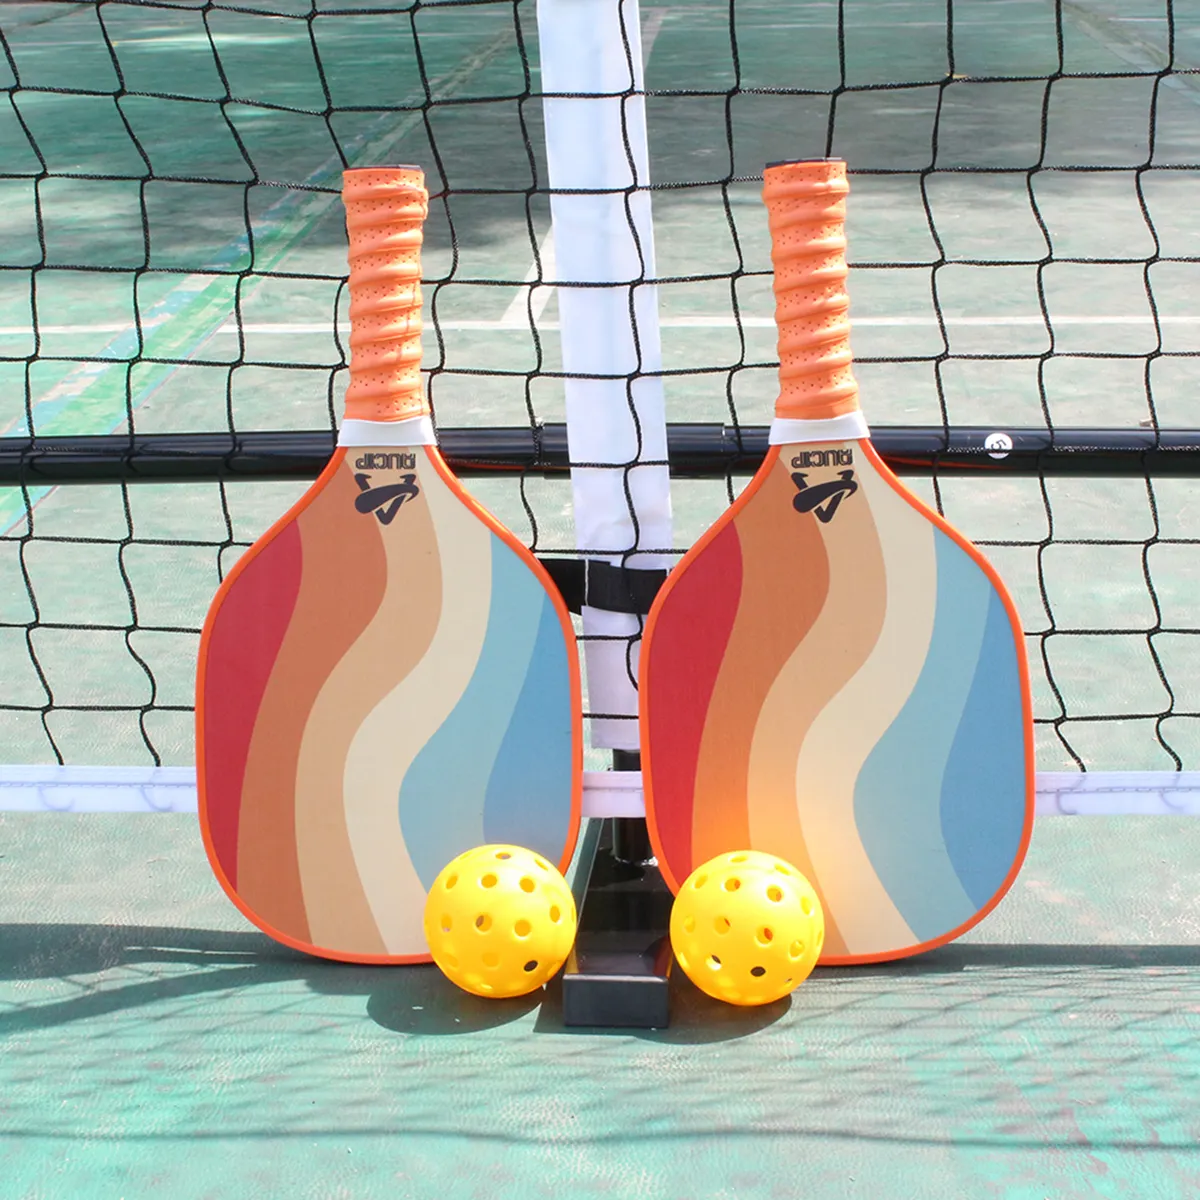 Fiberglas Pickleball tenis raketi hafif turşu topları petek çekirdek grafit yüz veya cam elyaf yüz